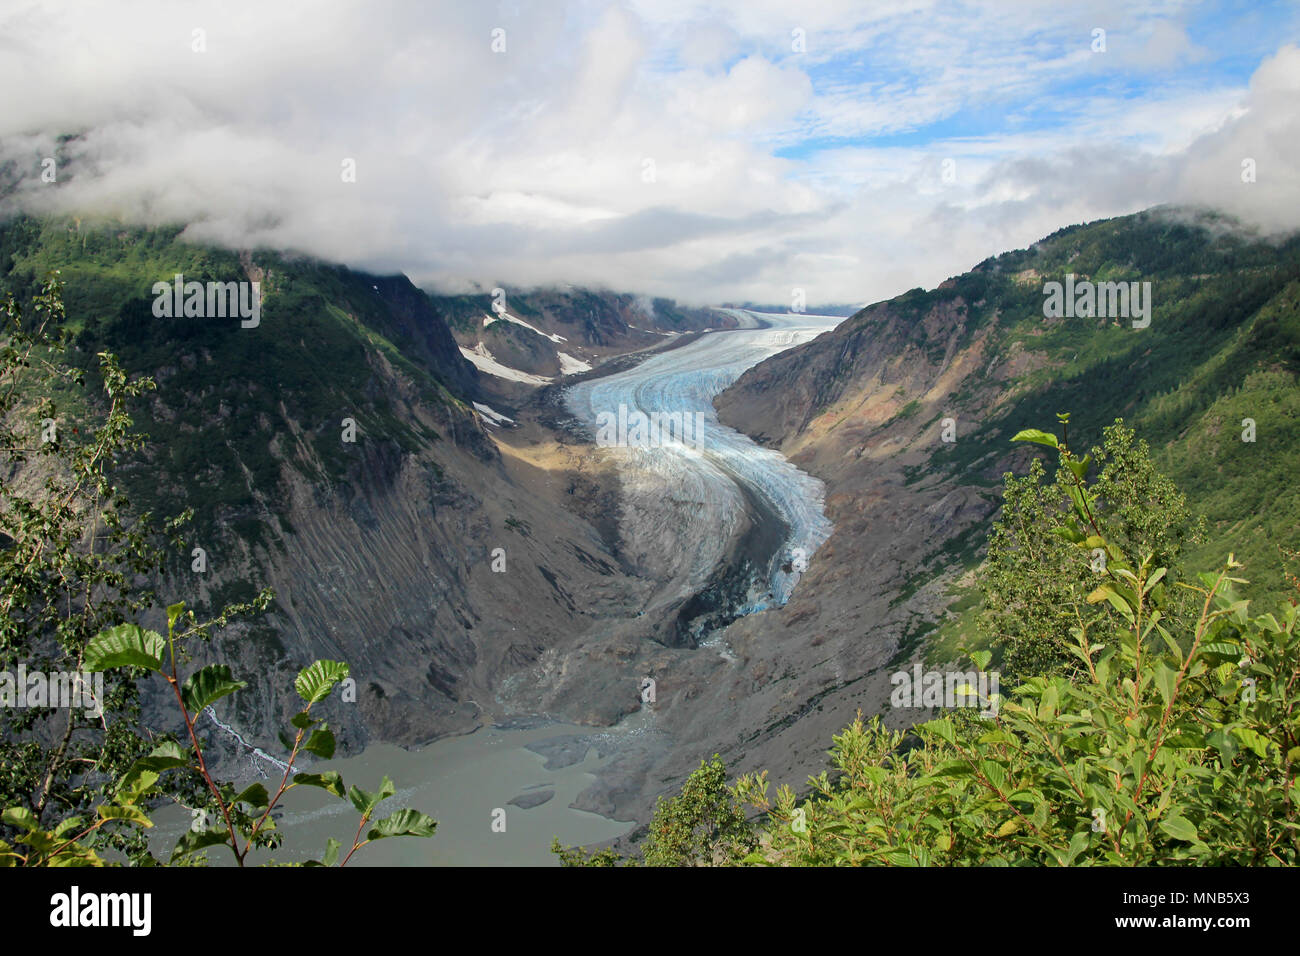 Salmón glaciar cerca de Hyder, Alaska y Stewart, Canadá, el glaciar está situado en el lado canadiense de la booarder en Columbia Británica Foto de stock